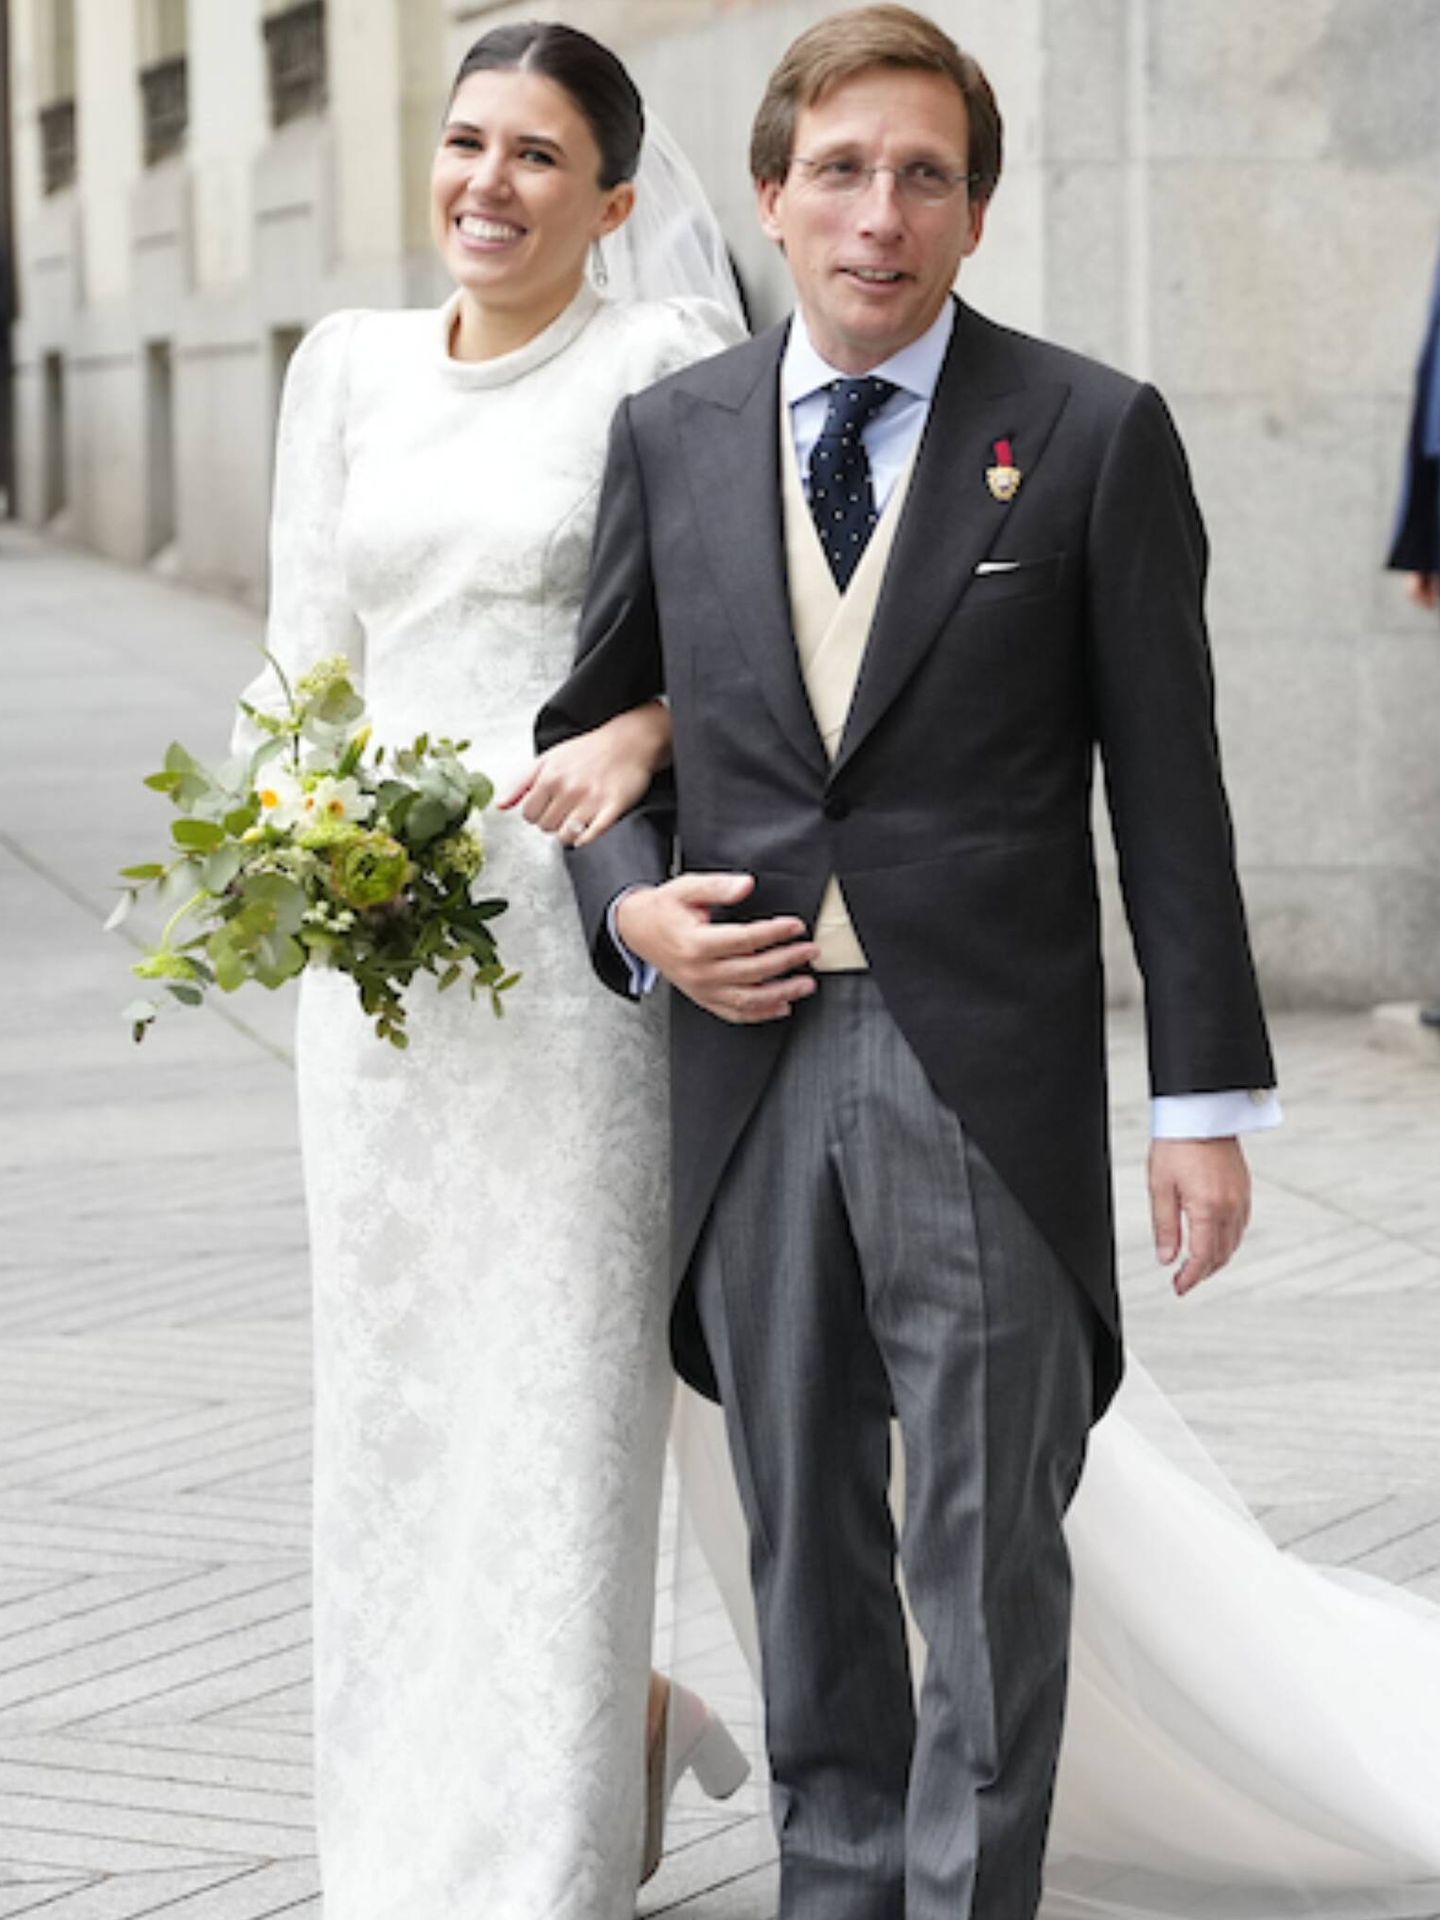 Teresa Urquijo y José Luis Martínez-Almeida, como recién casados tras su boda religiosa. (LP)